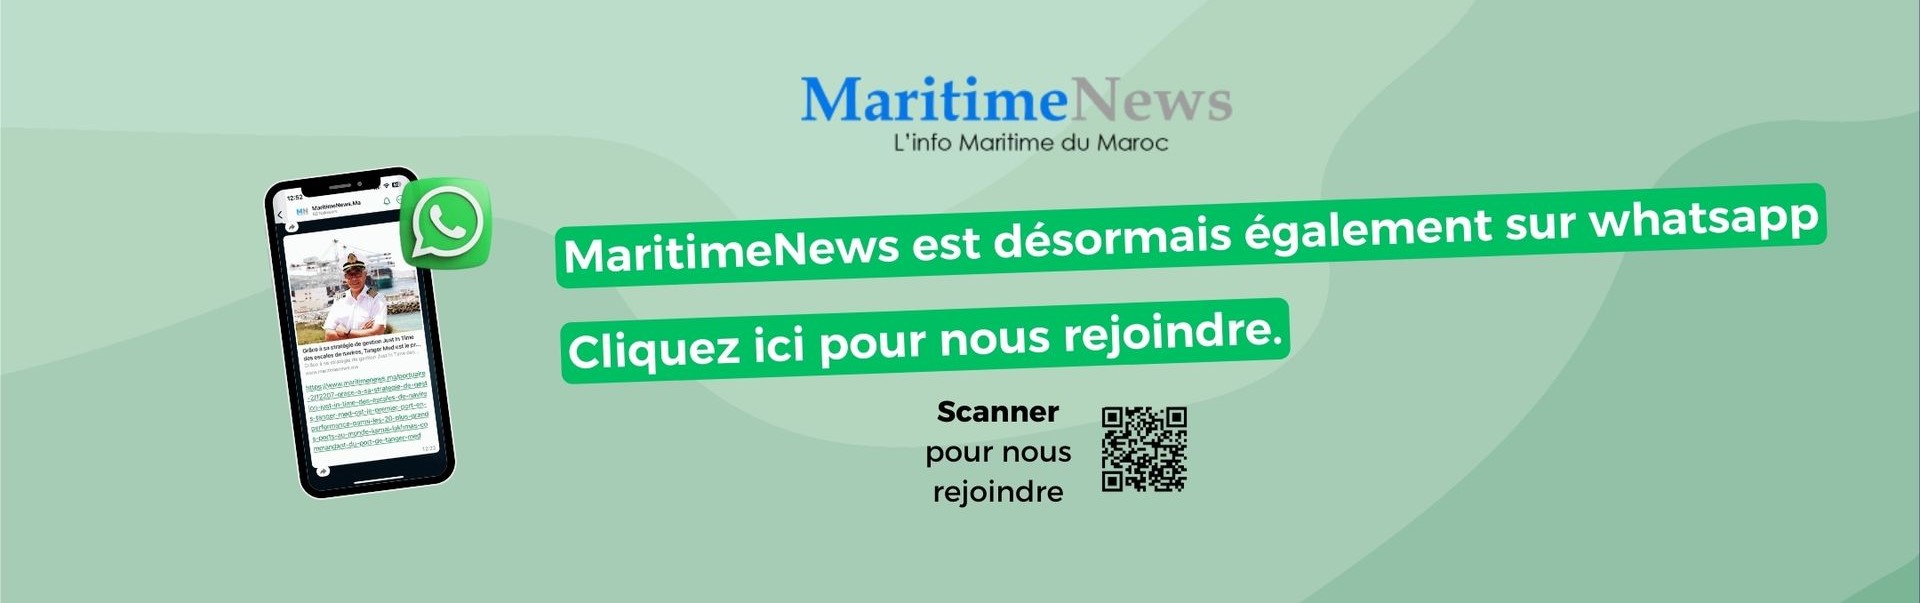 Bannières chaine WhatsApp Maritimenews